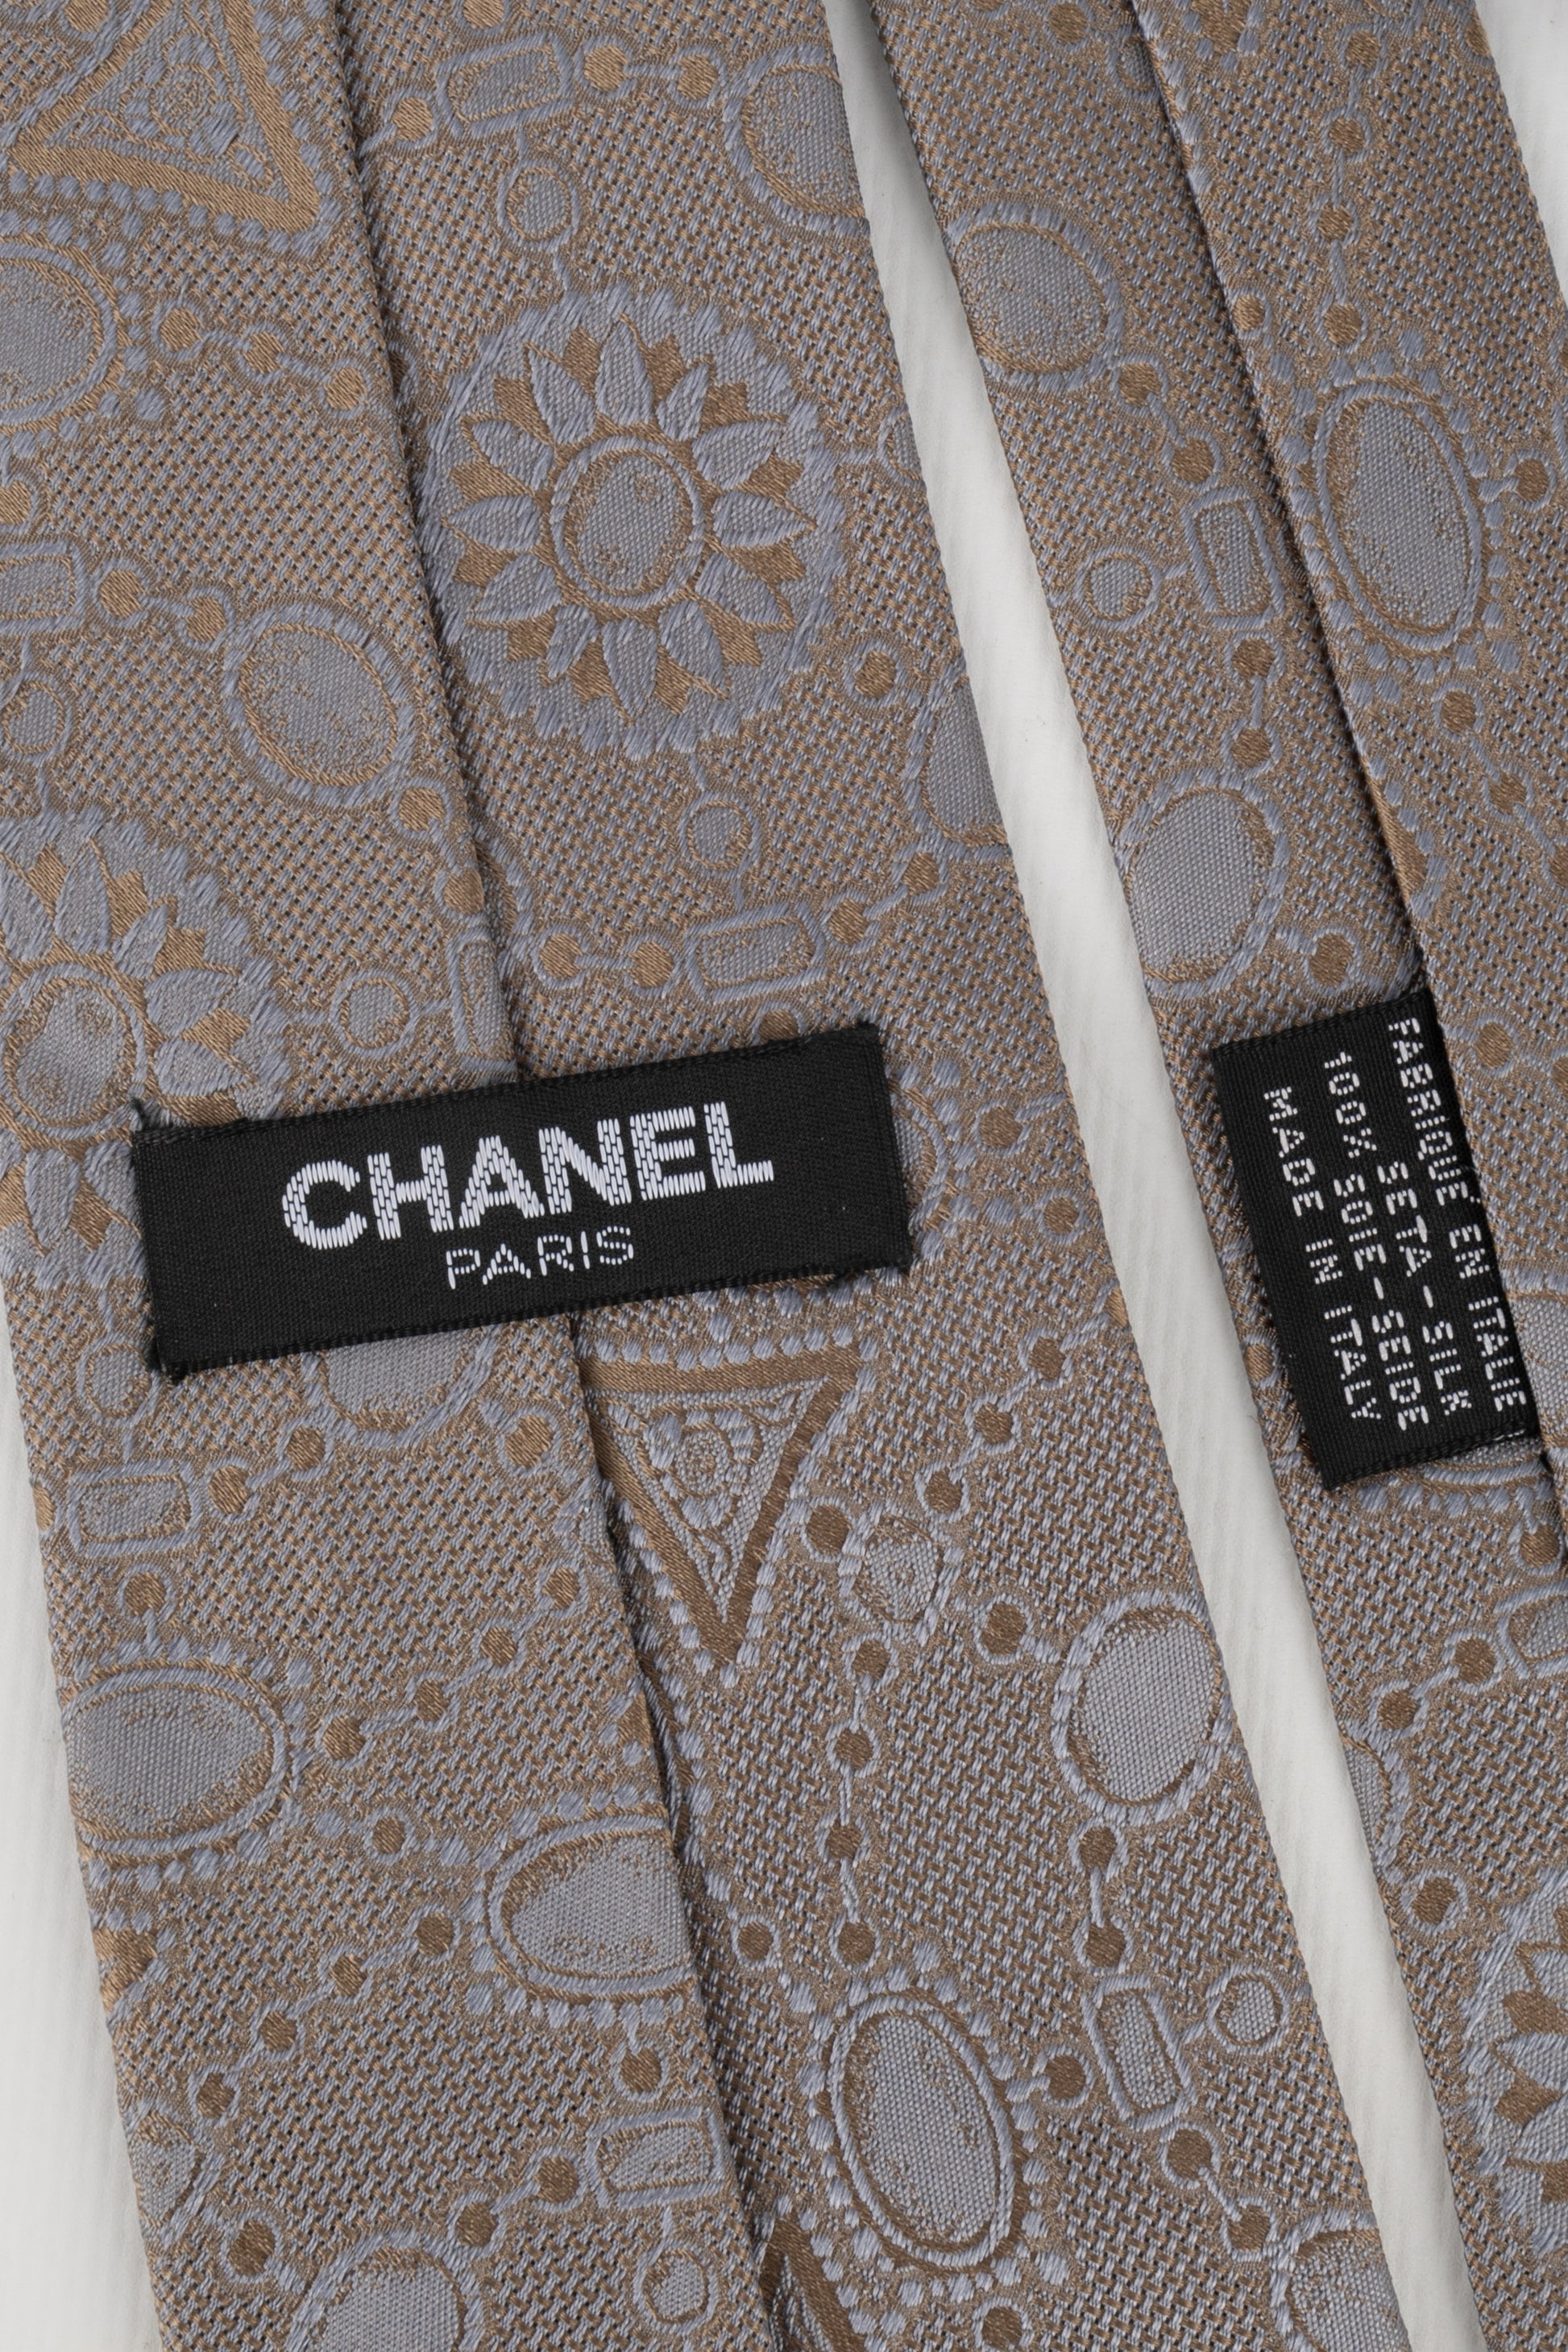 Cravate en soie Chanel